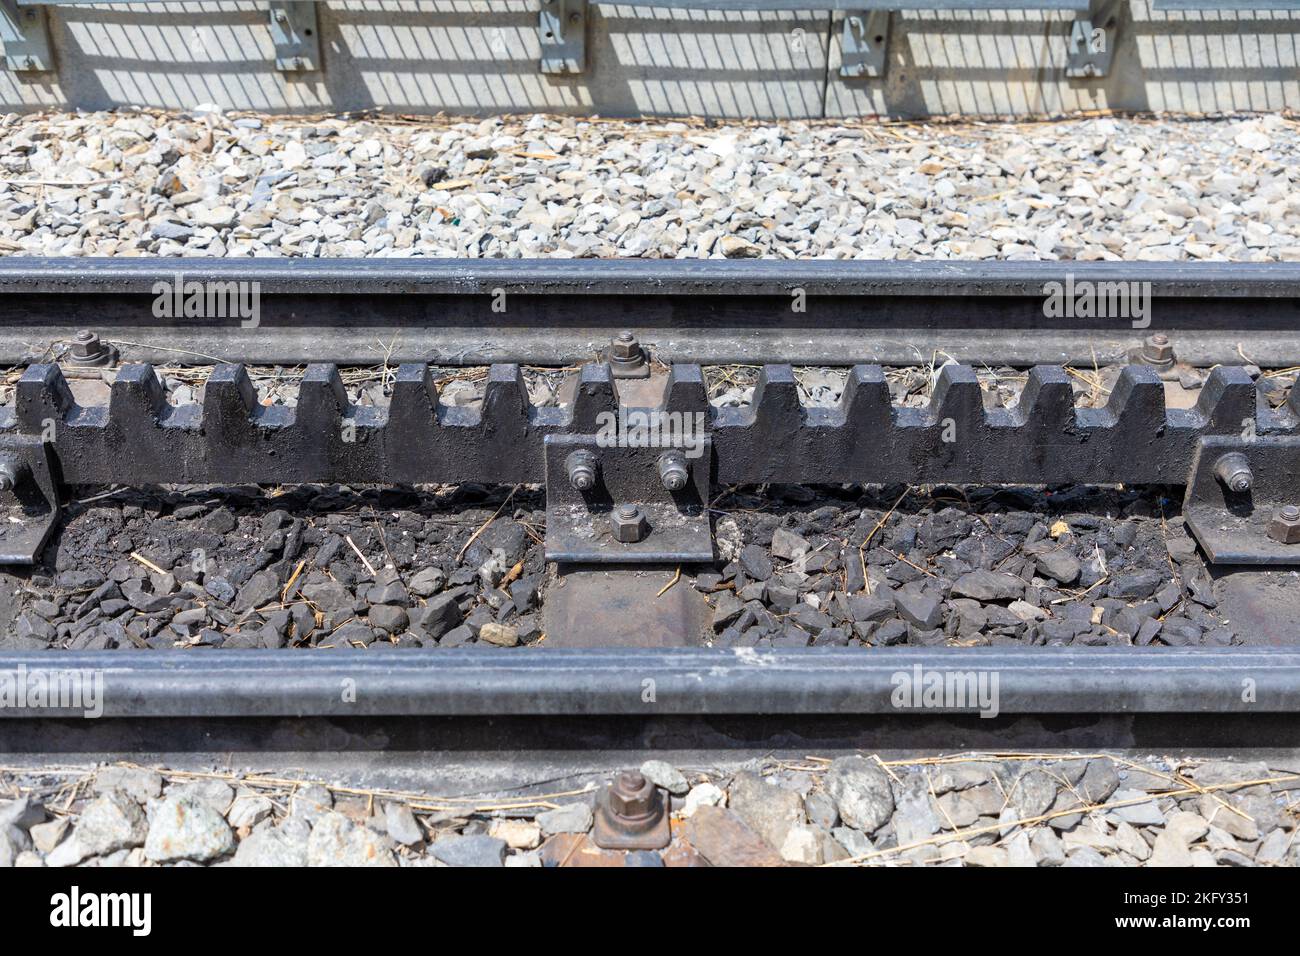 Trainieren Sie Gleise mit einem Zahnradsystem in der Mitte der Gleise. Typisch für Bahngleise in den Schweizer Alpen. Stockfoto